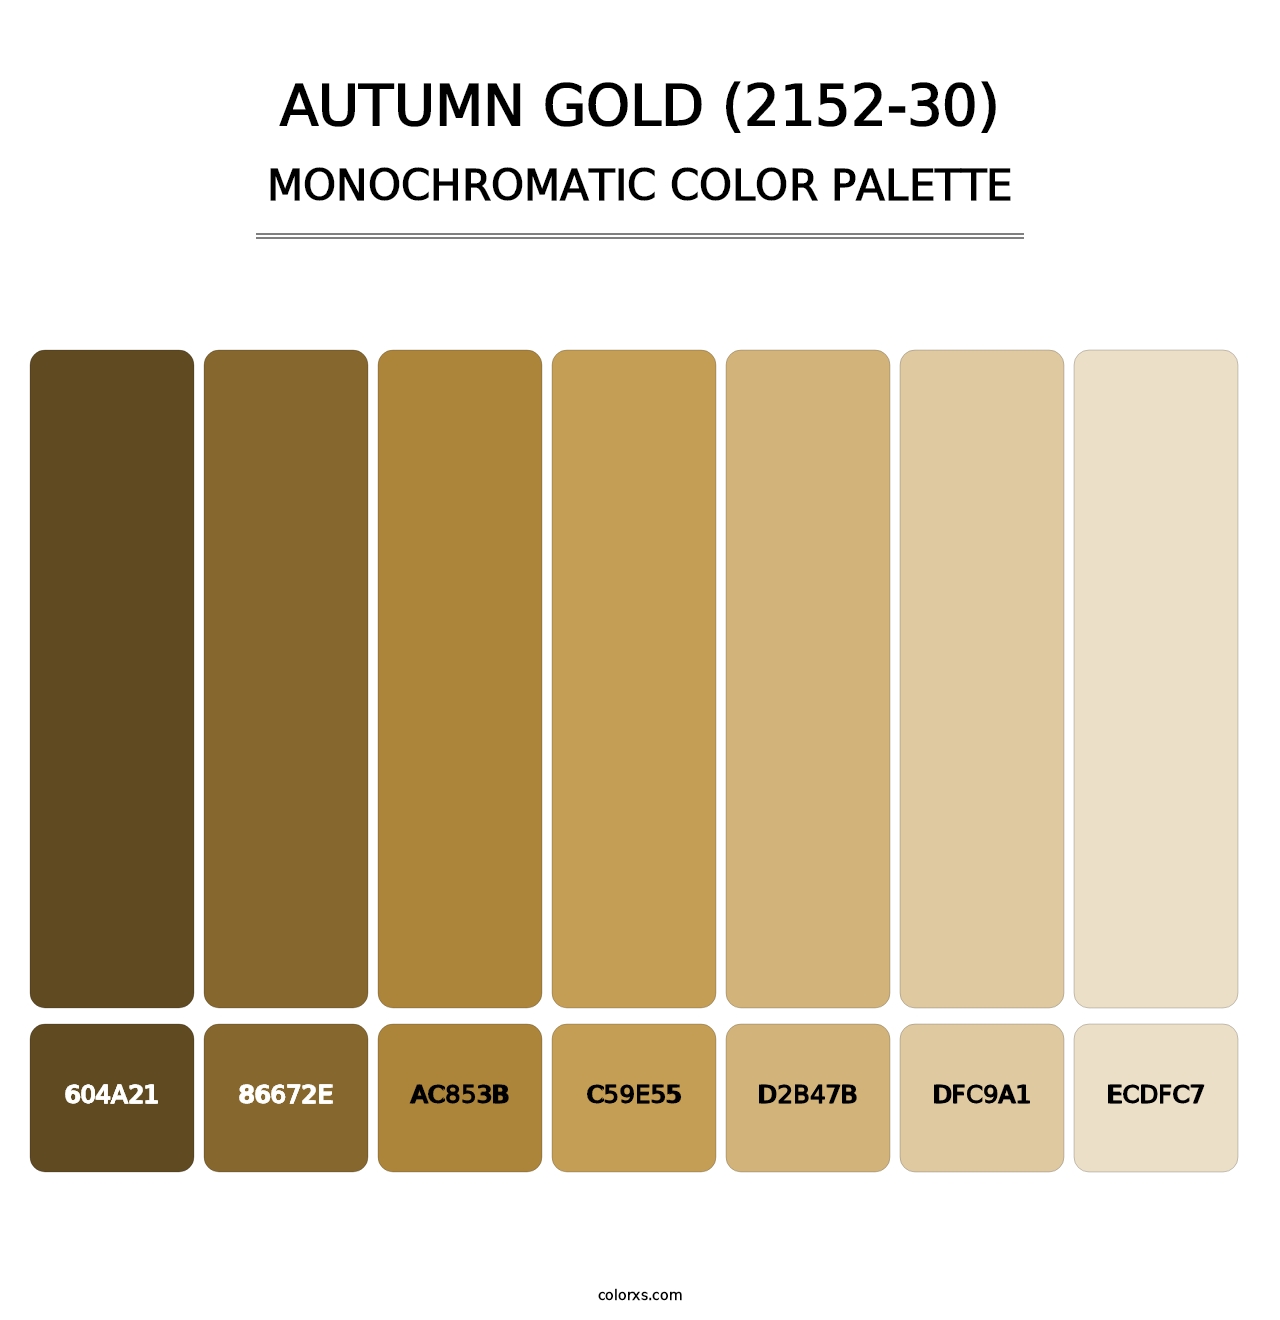 Autumn Gold (2152-30) - Monochromatic Color Palette